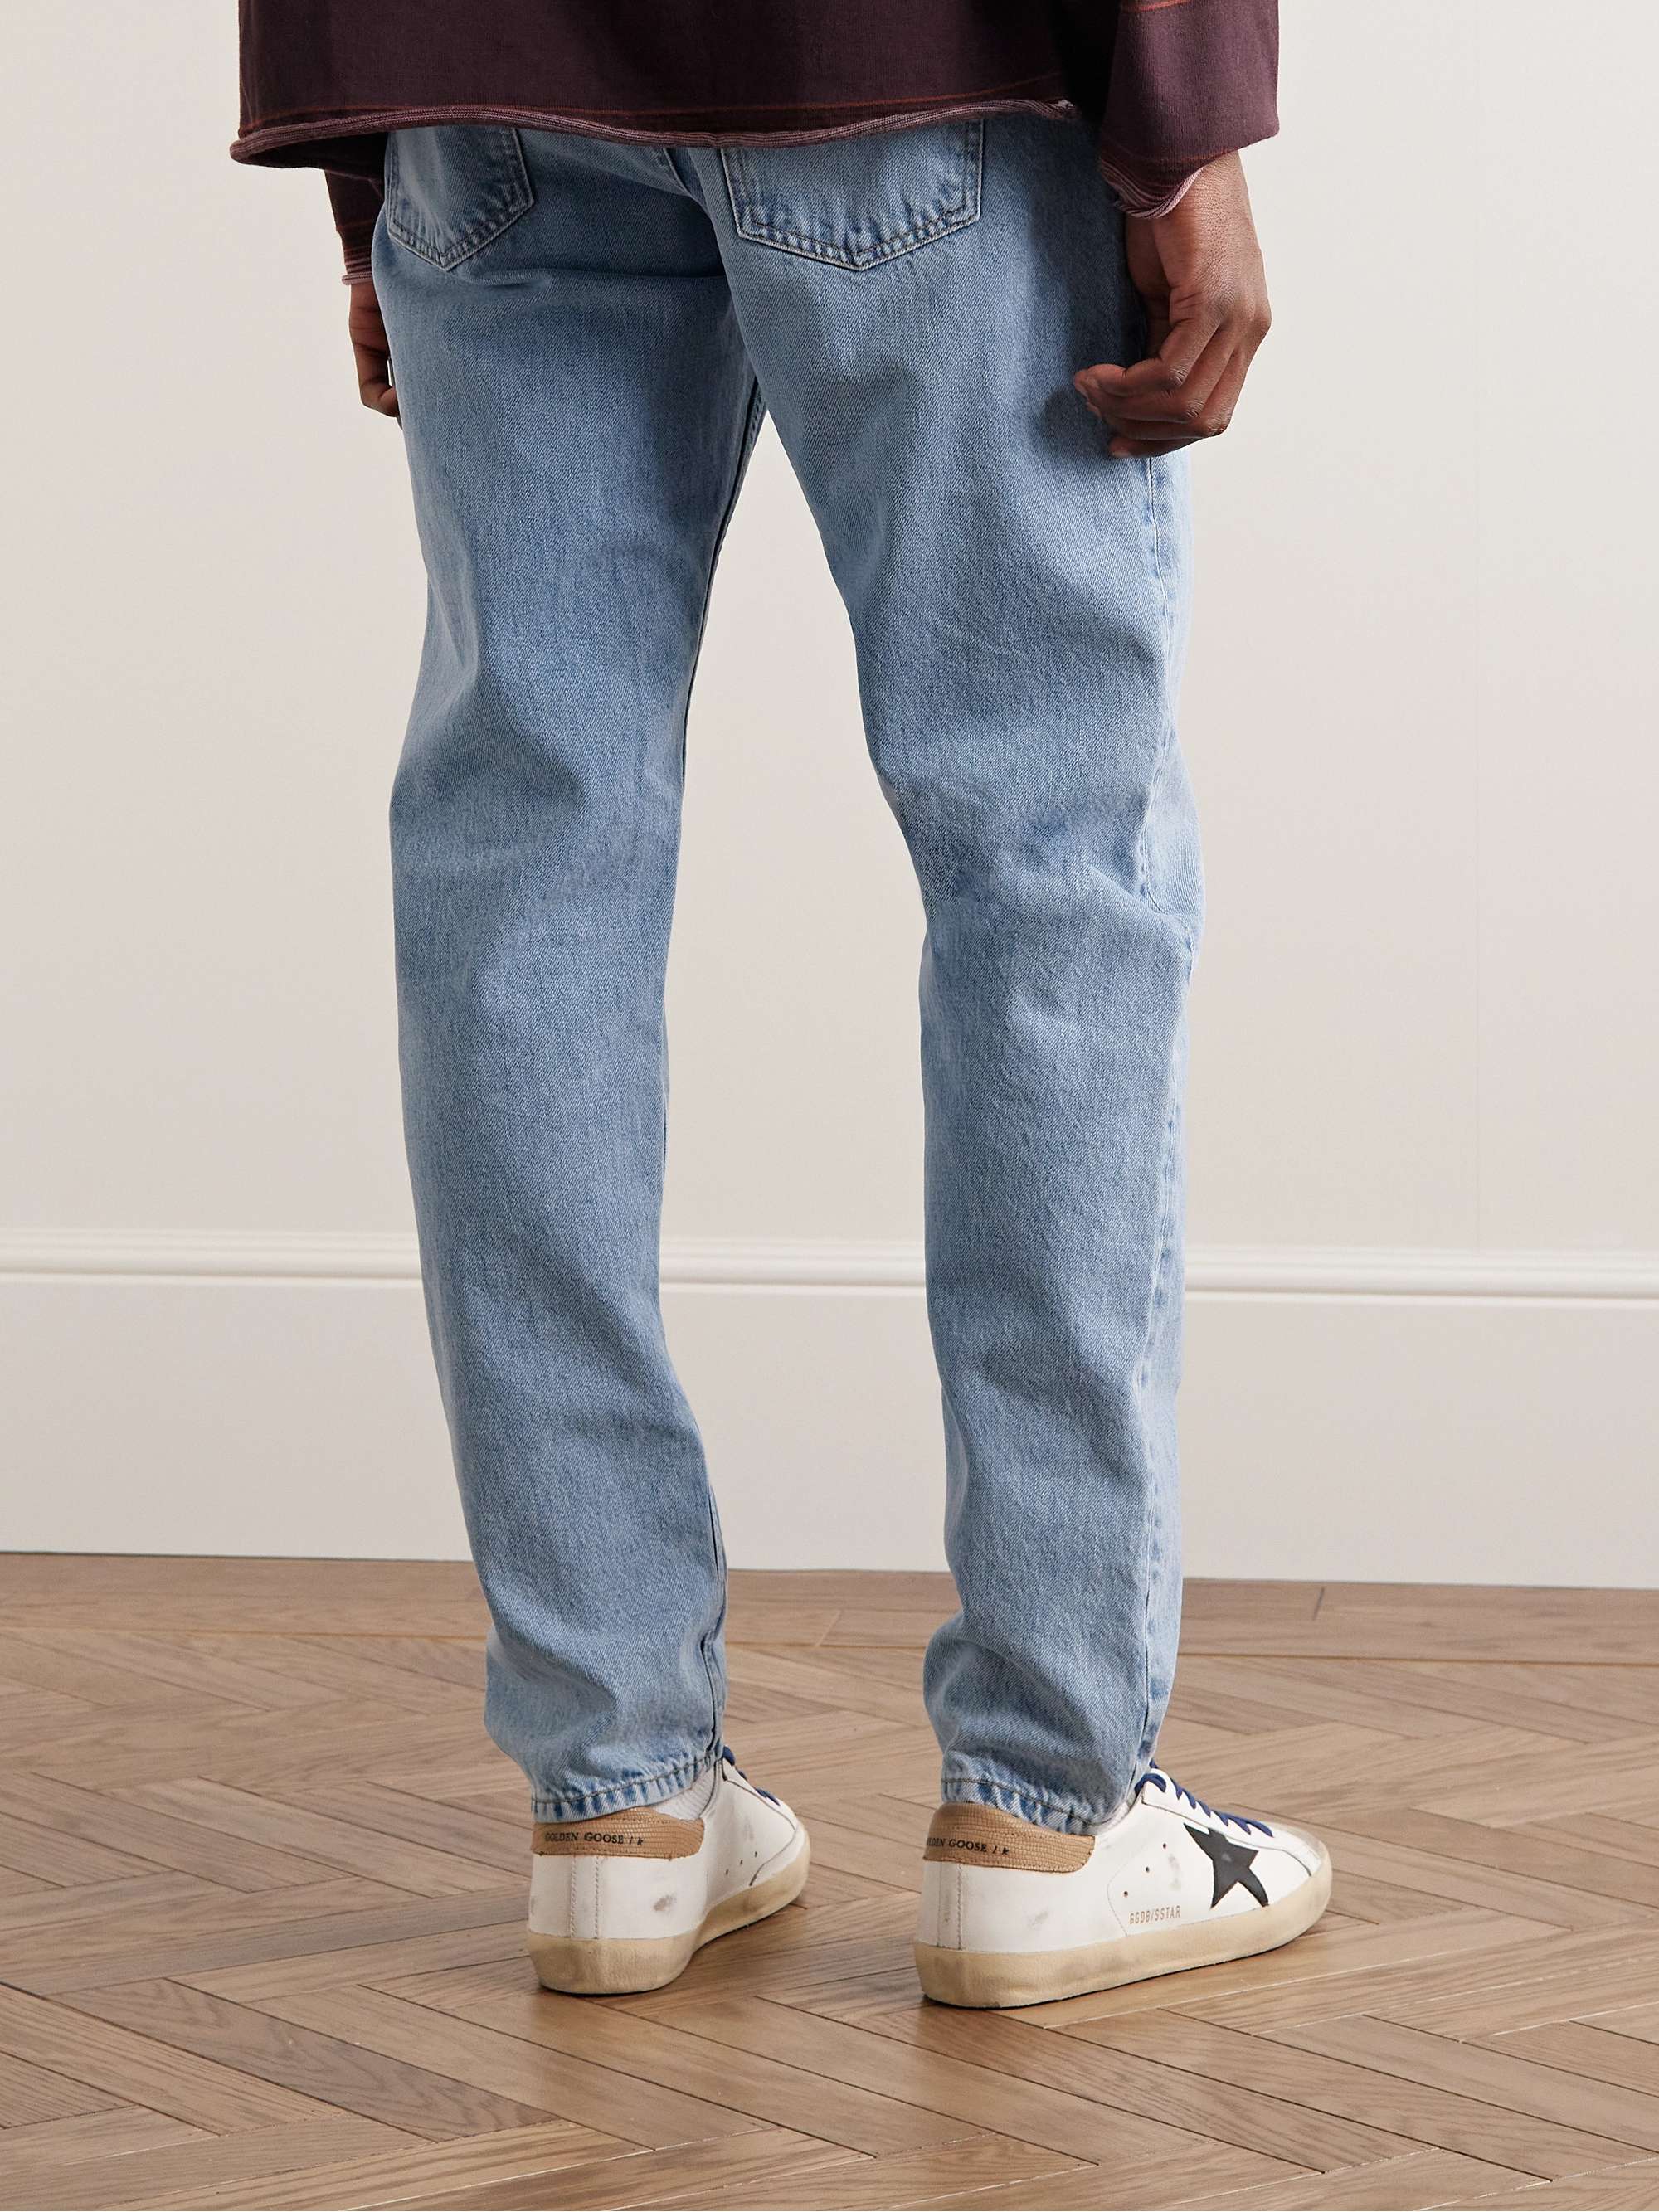 NUDIE JEANS Steady Eddie II Slim-Fit Tapered Jeans for Men | MR PORTER